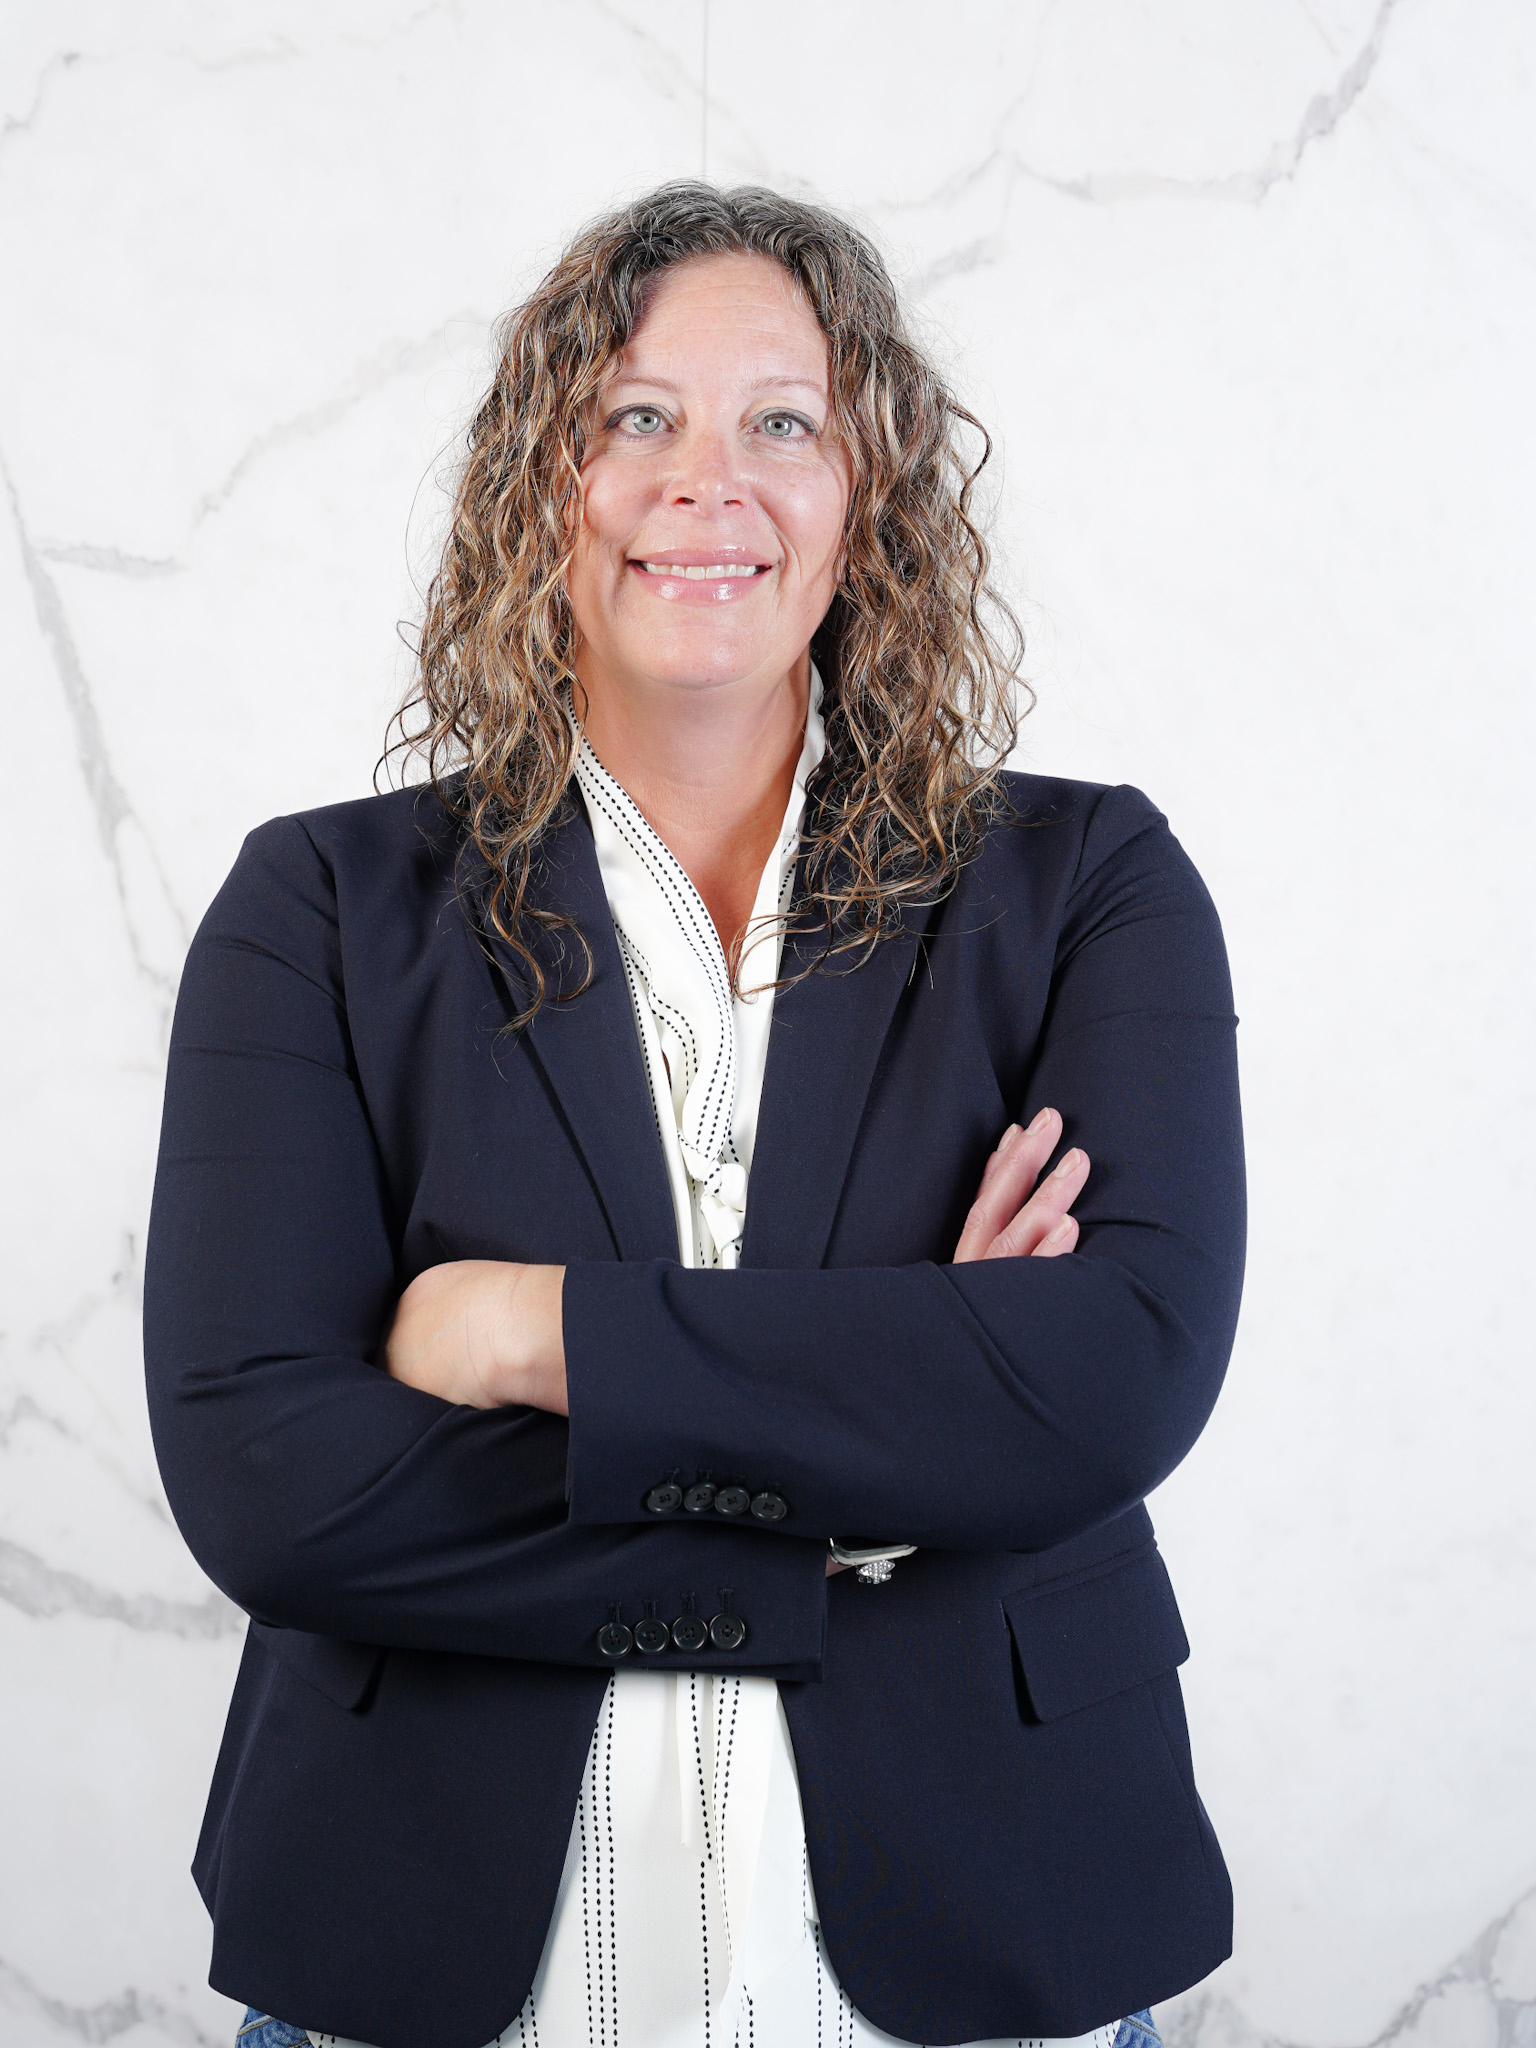 Julie Griffin, Denver General Manager